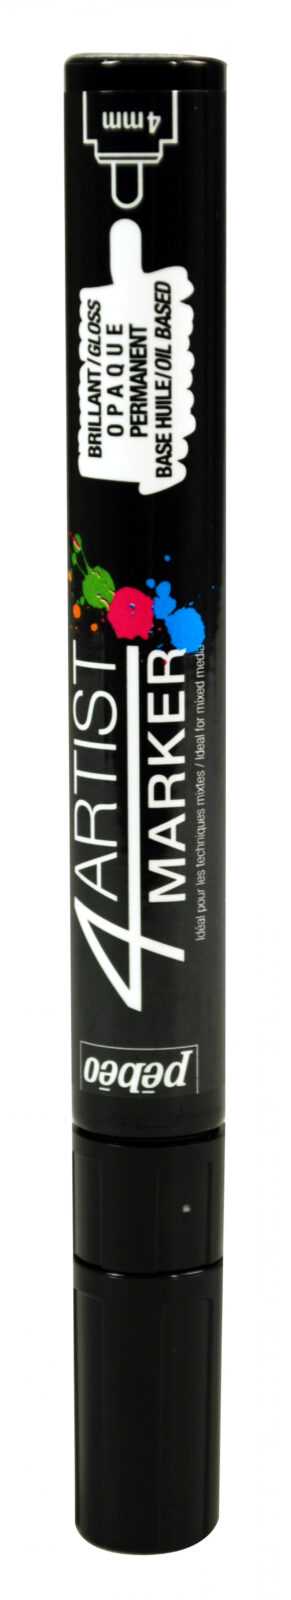 4Artist Marker 4 Mm Round Black